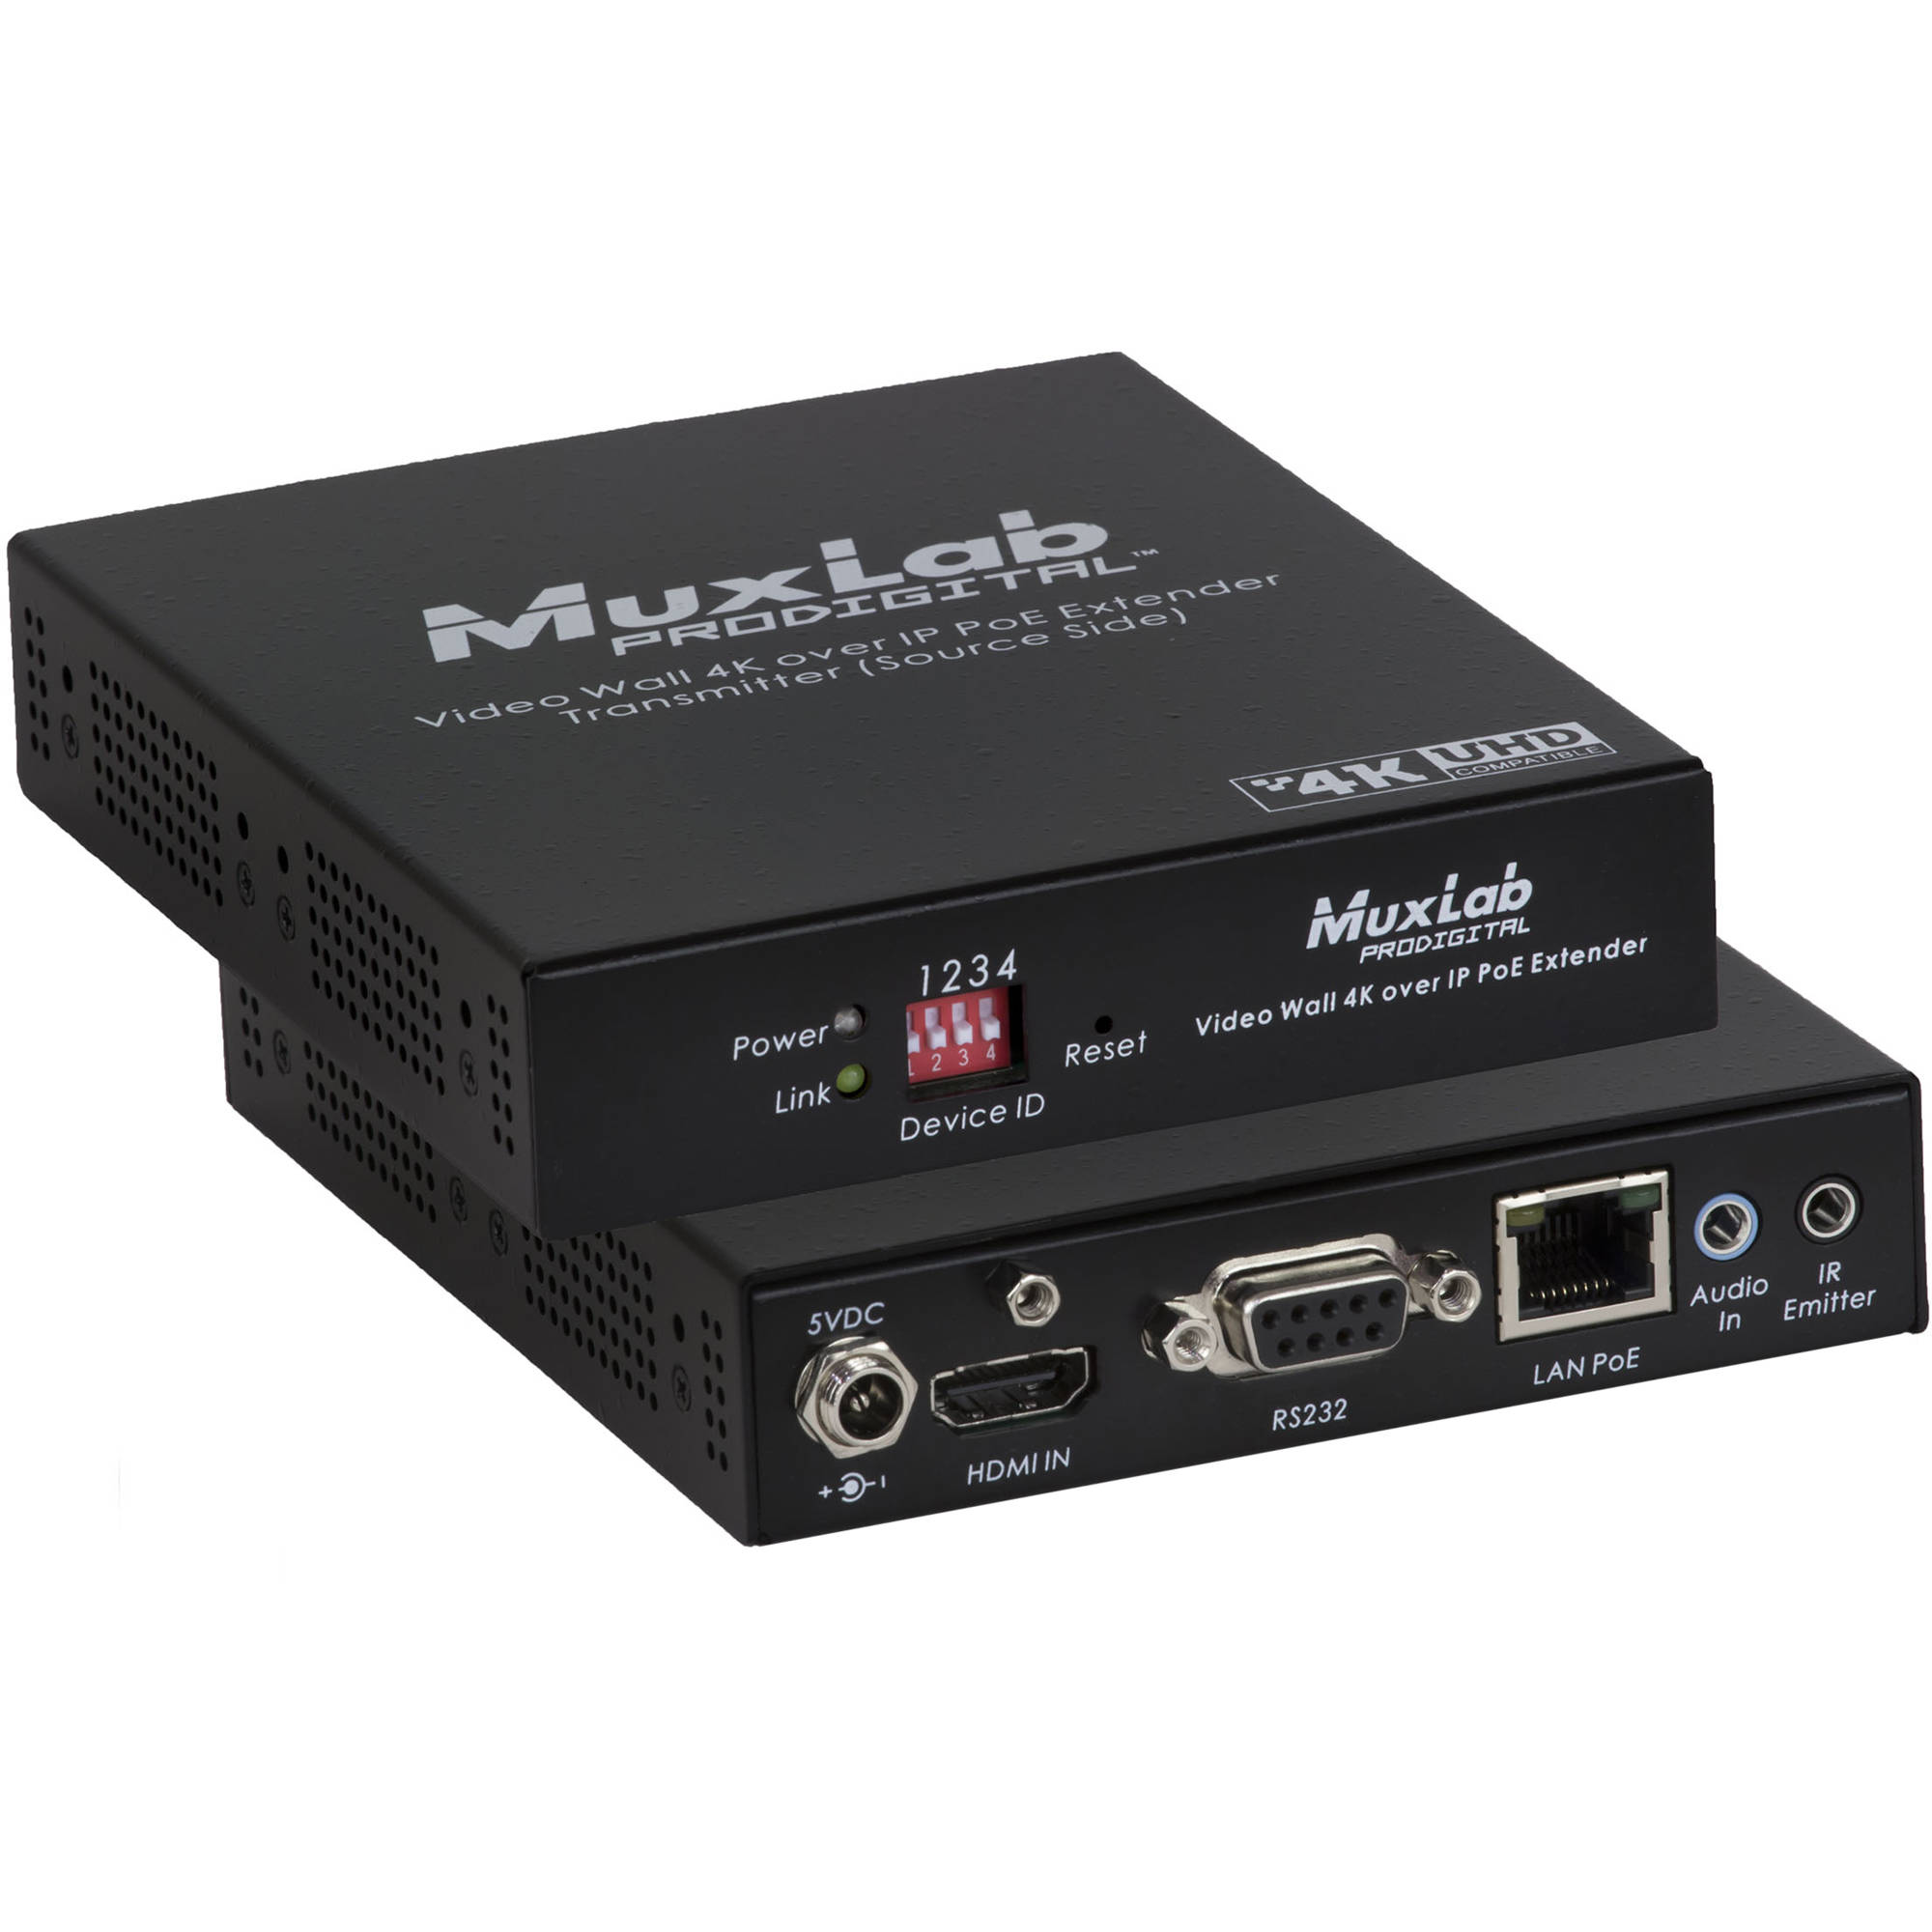 Передатчик-энкодер MuxLab 4K Over IP, сжатие JPEG2000, с PoE, с функцией видеостены MuxLab 500759-TX